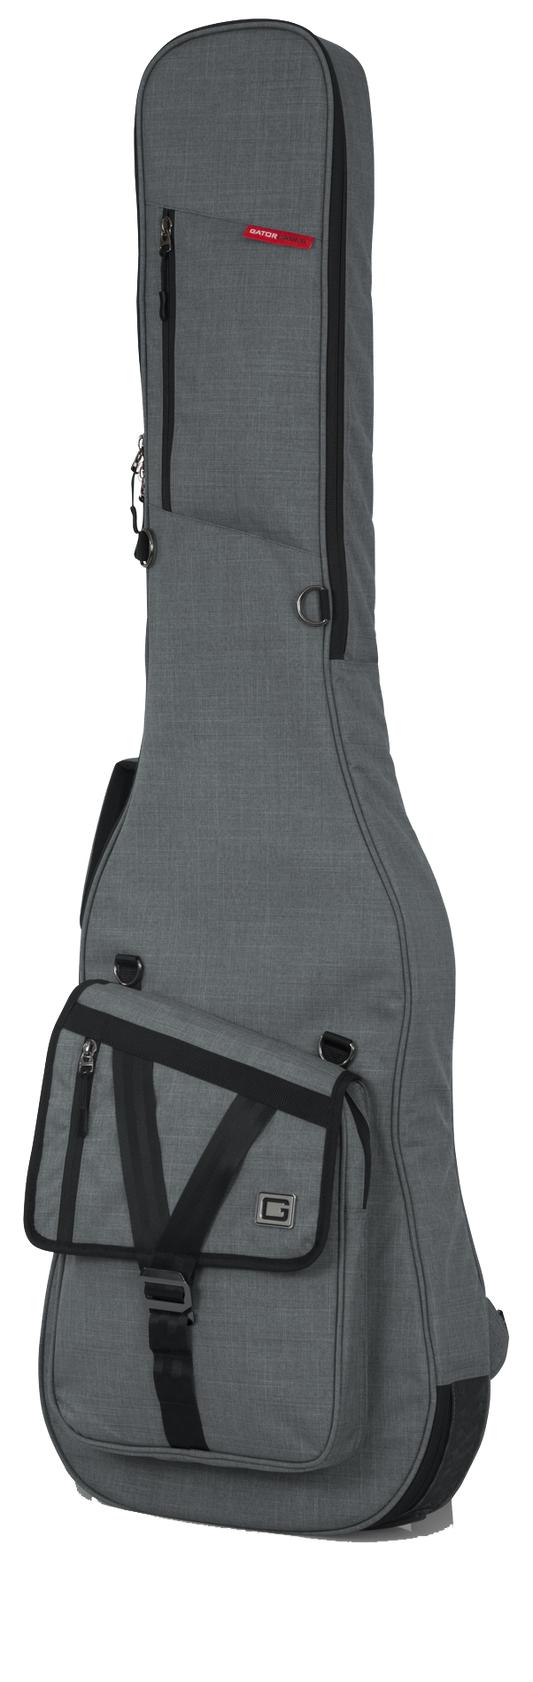 Front of Gator Transit Series Bass Guitar Bag Grey.